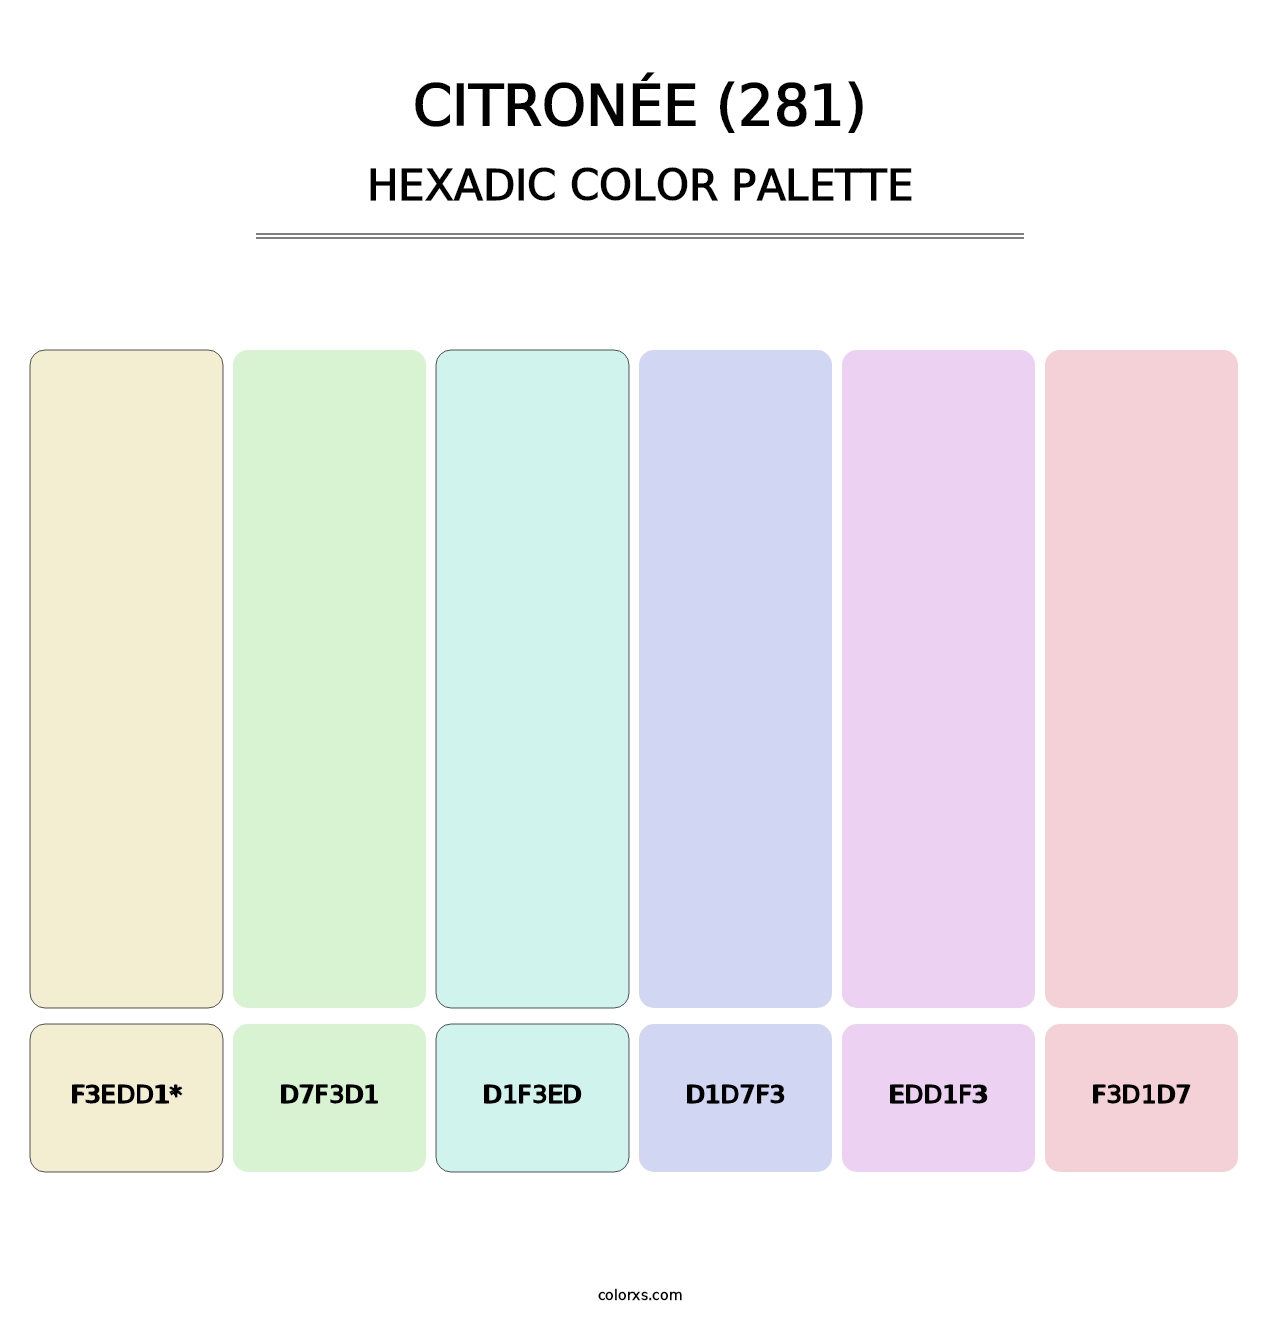 Citronée (281) - Hexadic Color Palette